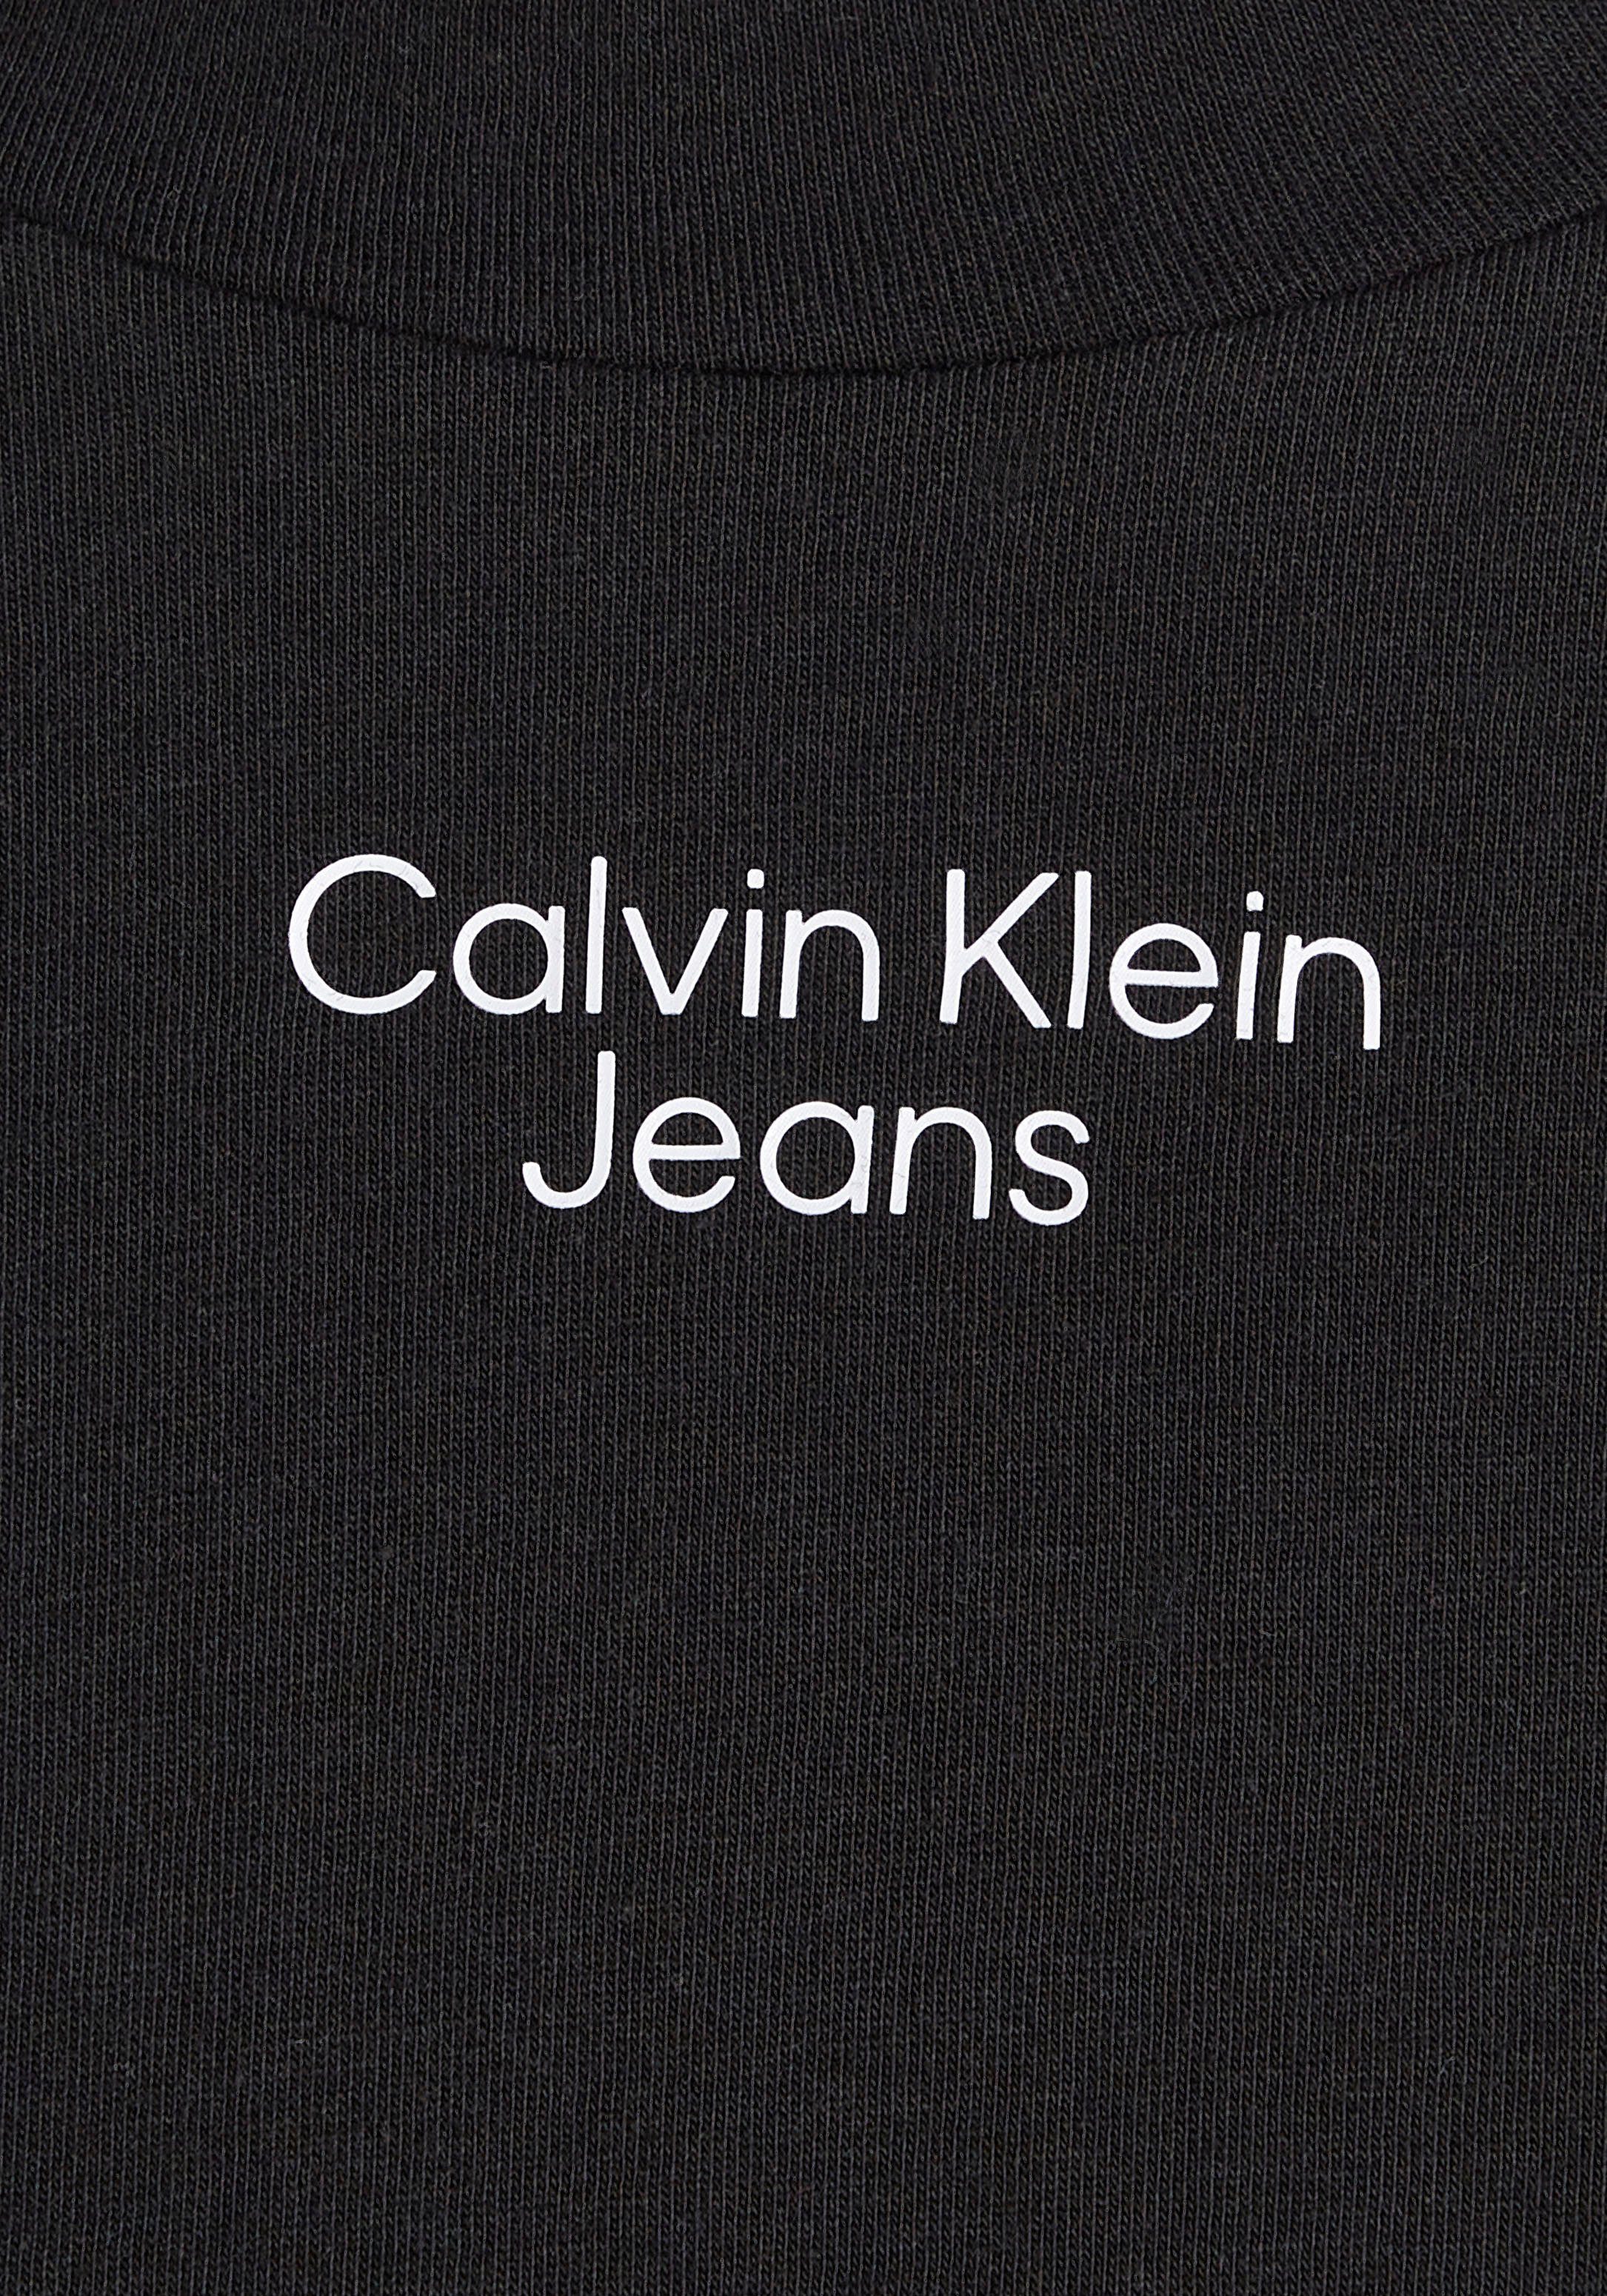 Jeans Black LOGO Klein dezentem TEE Calvin Klein mit Calvin STACKED MODERN Ck T-Shirt STRAIGHT Jeans Logodruck